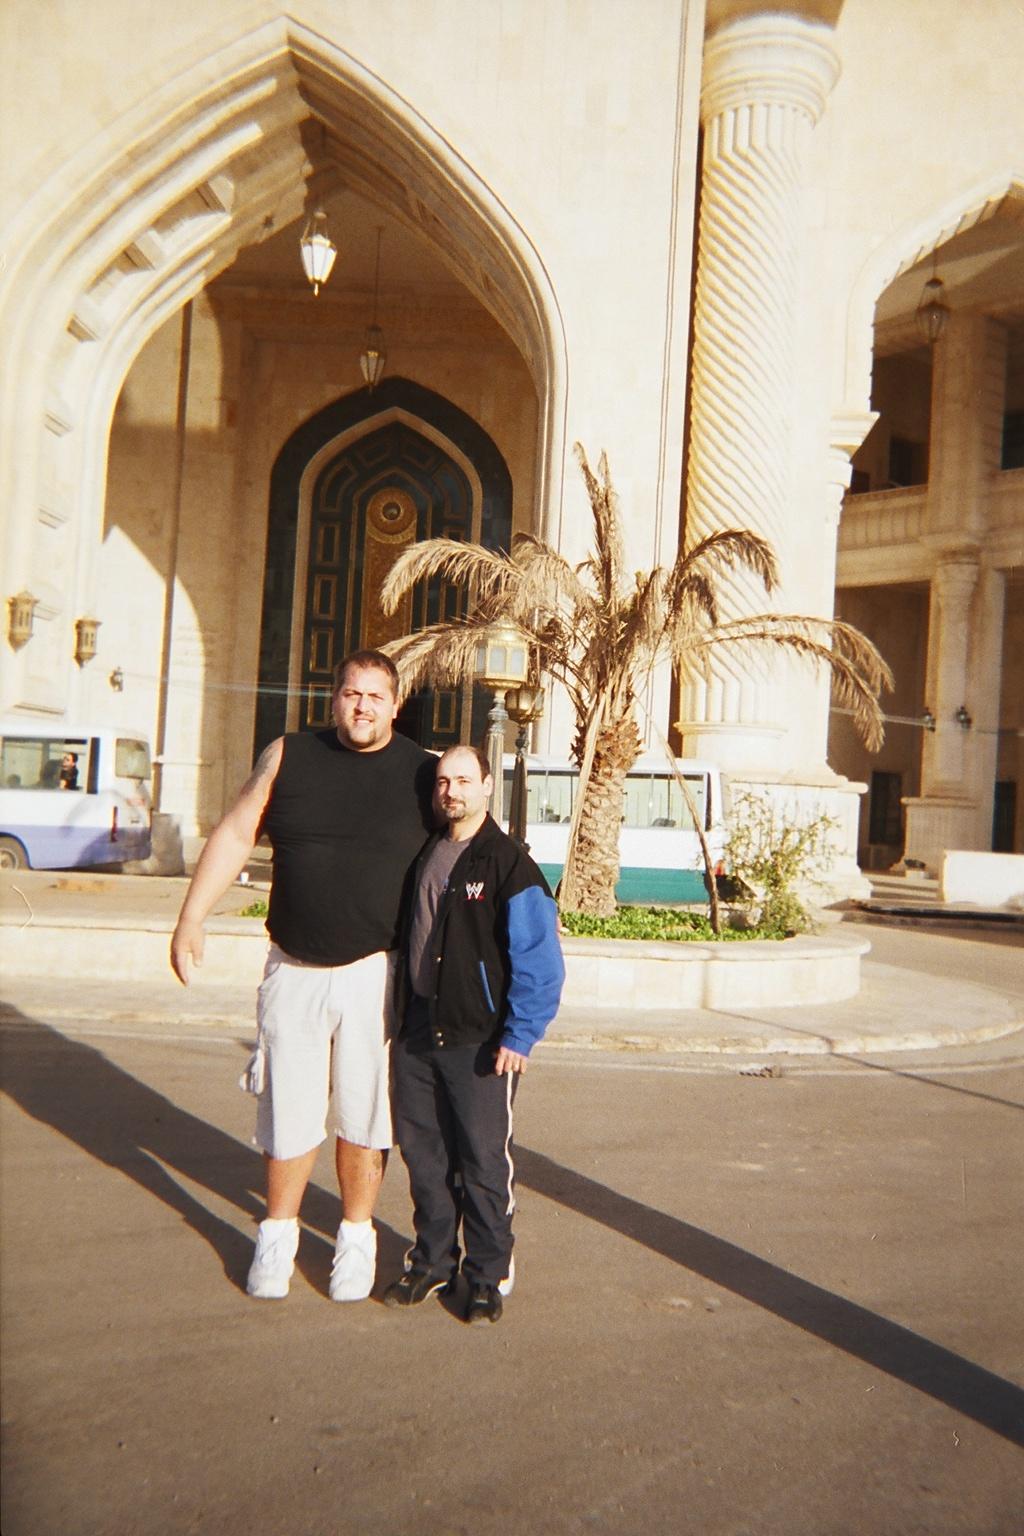 The Big Show & I outside Saddam Husseinâs place. Our accommodations in Iraq. My Photo